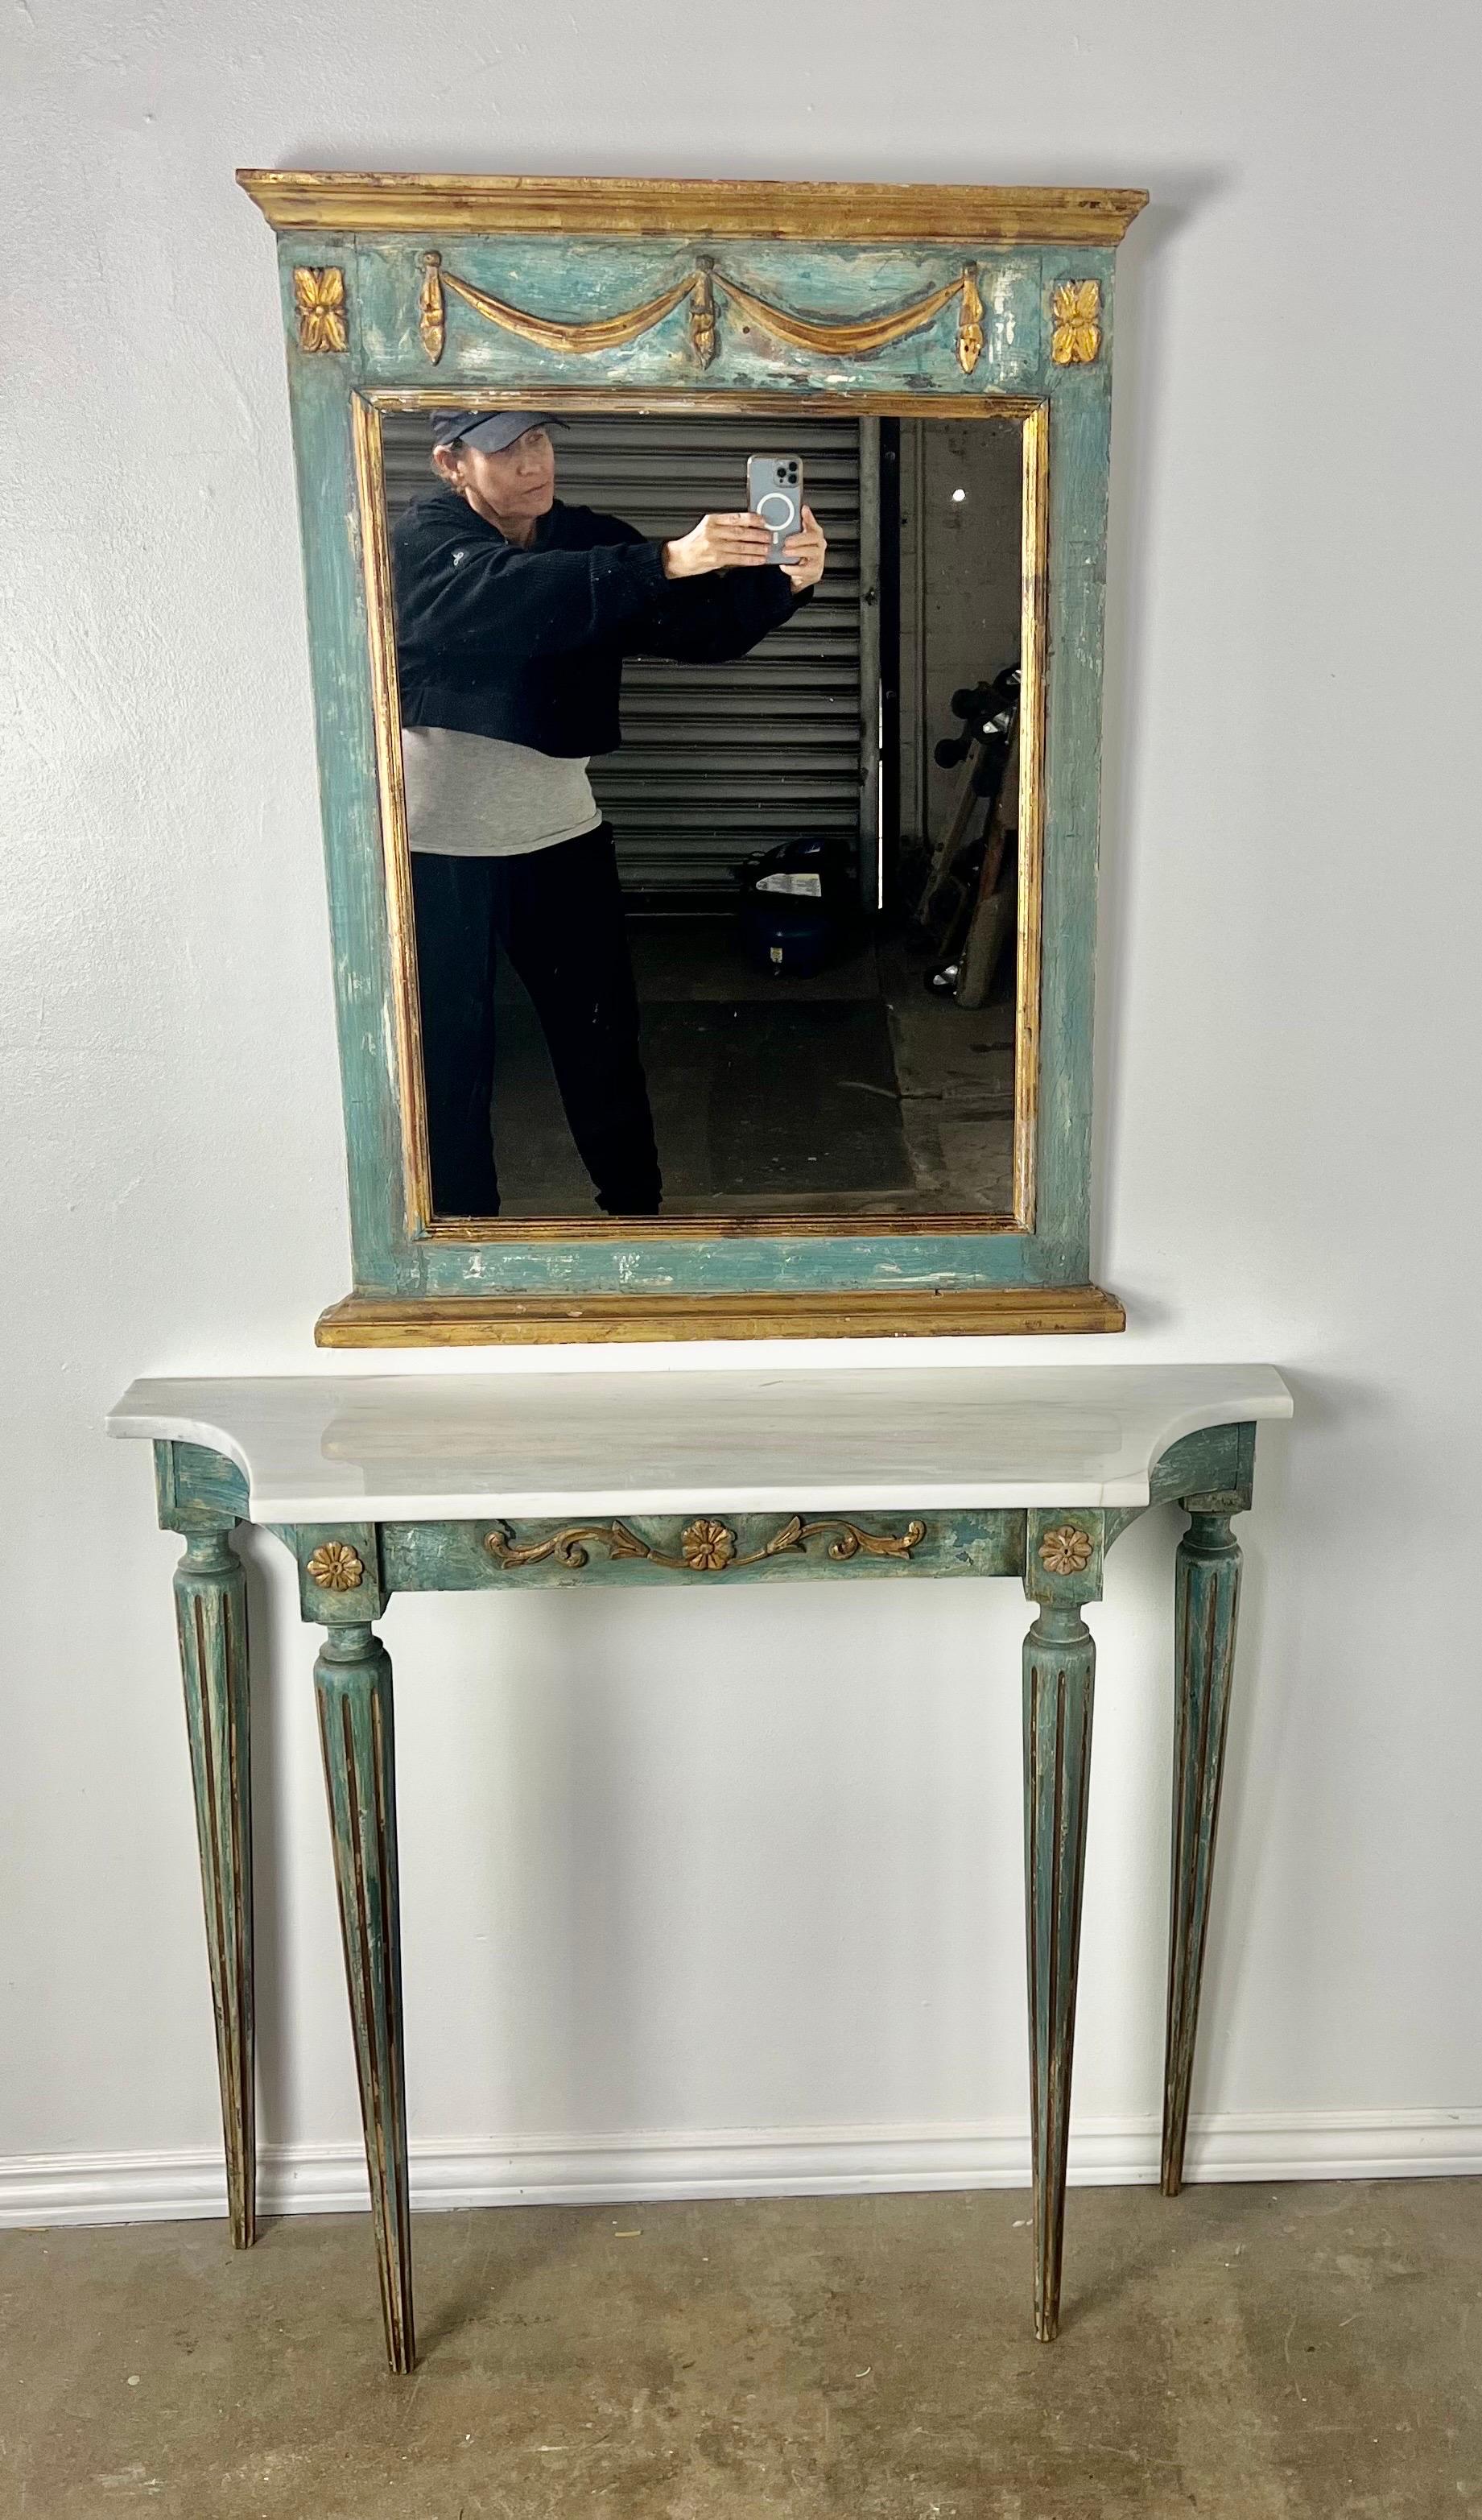 Italienische Konsole aus den 1930er Jahren, bemalt, mit passendem Spiegel.  Die Konsole steht auf vier kannelierten Beinen und hat eine Steinplatte.  Sie sind in einer blau-grünen Färbung gehalten.  Die Farbe ist schön abgenutzt, so dass der Gesso